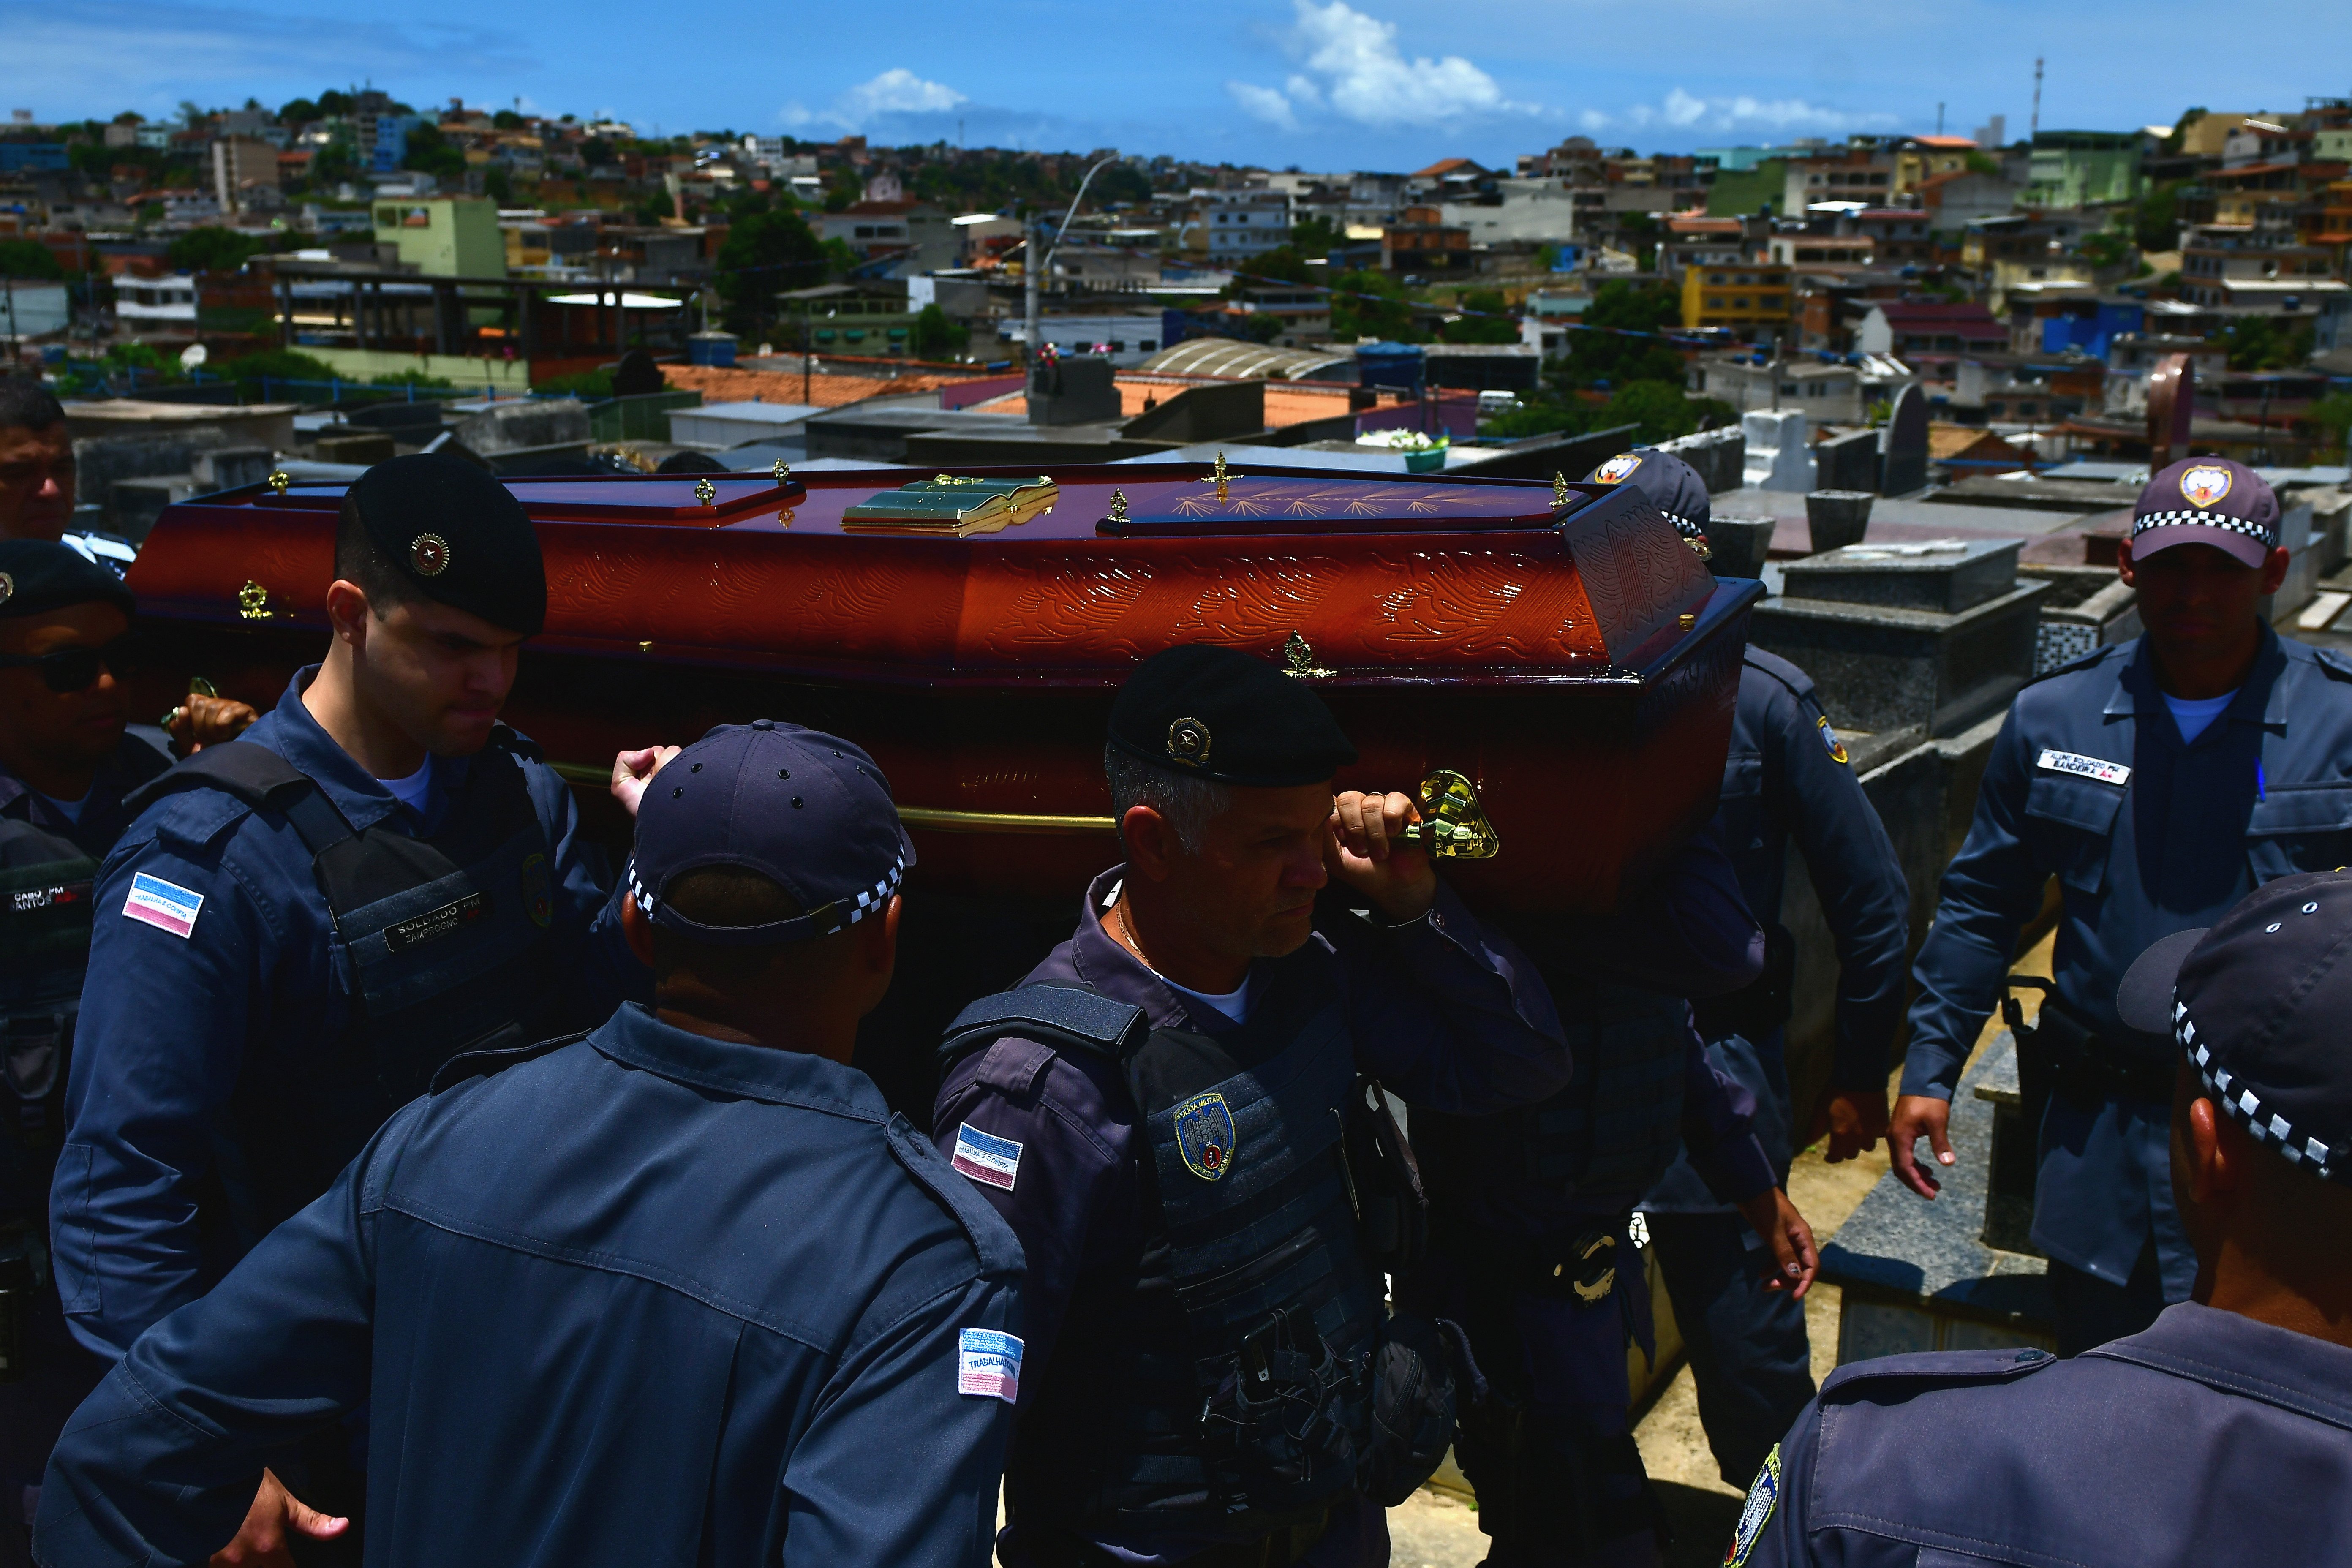 Sepultamento do soldado da polícia militar no cemitério São Pedro, bairro Santo André, em Cariacica, Bruno Mayer Ferrani, morto durante uma ocorrência, 